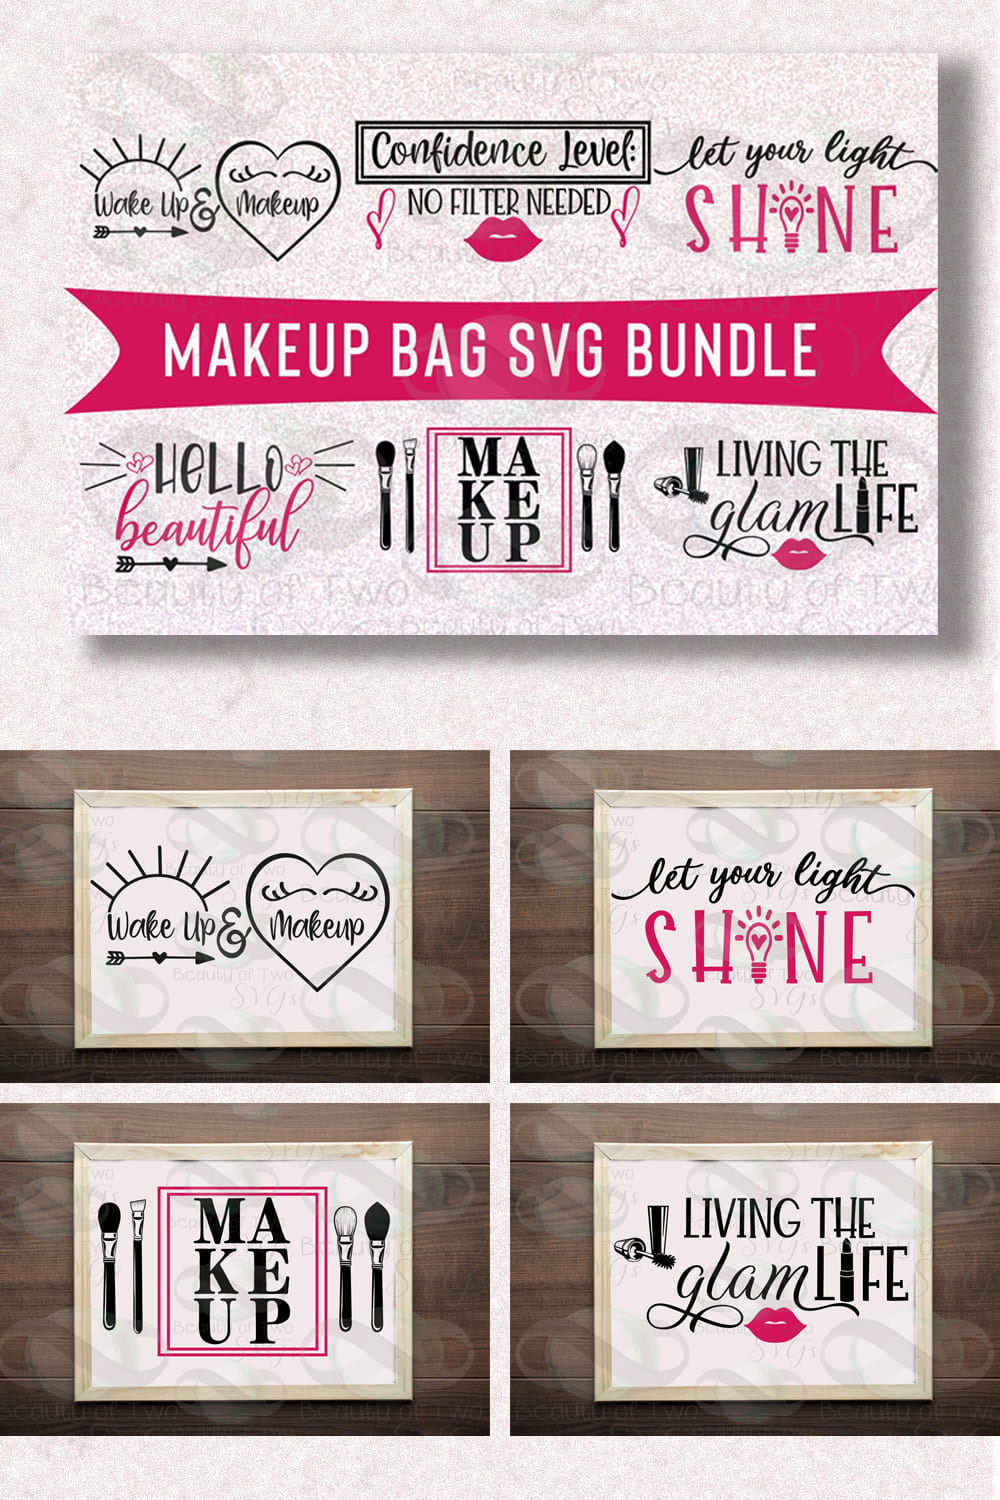 Makeup Bag SVG Bundle pinterest image.